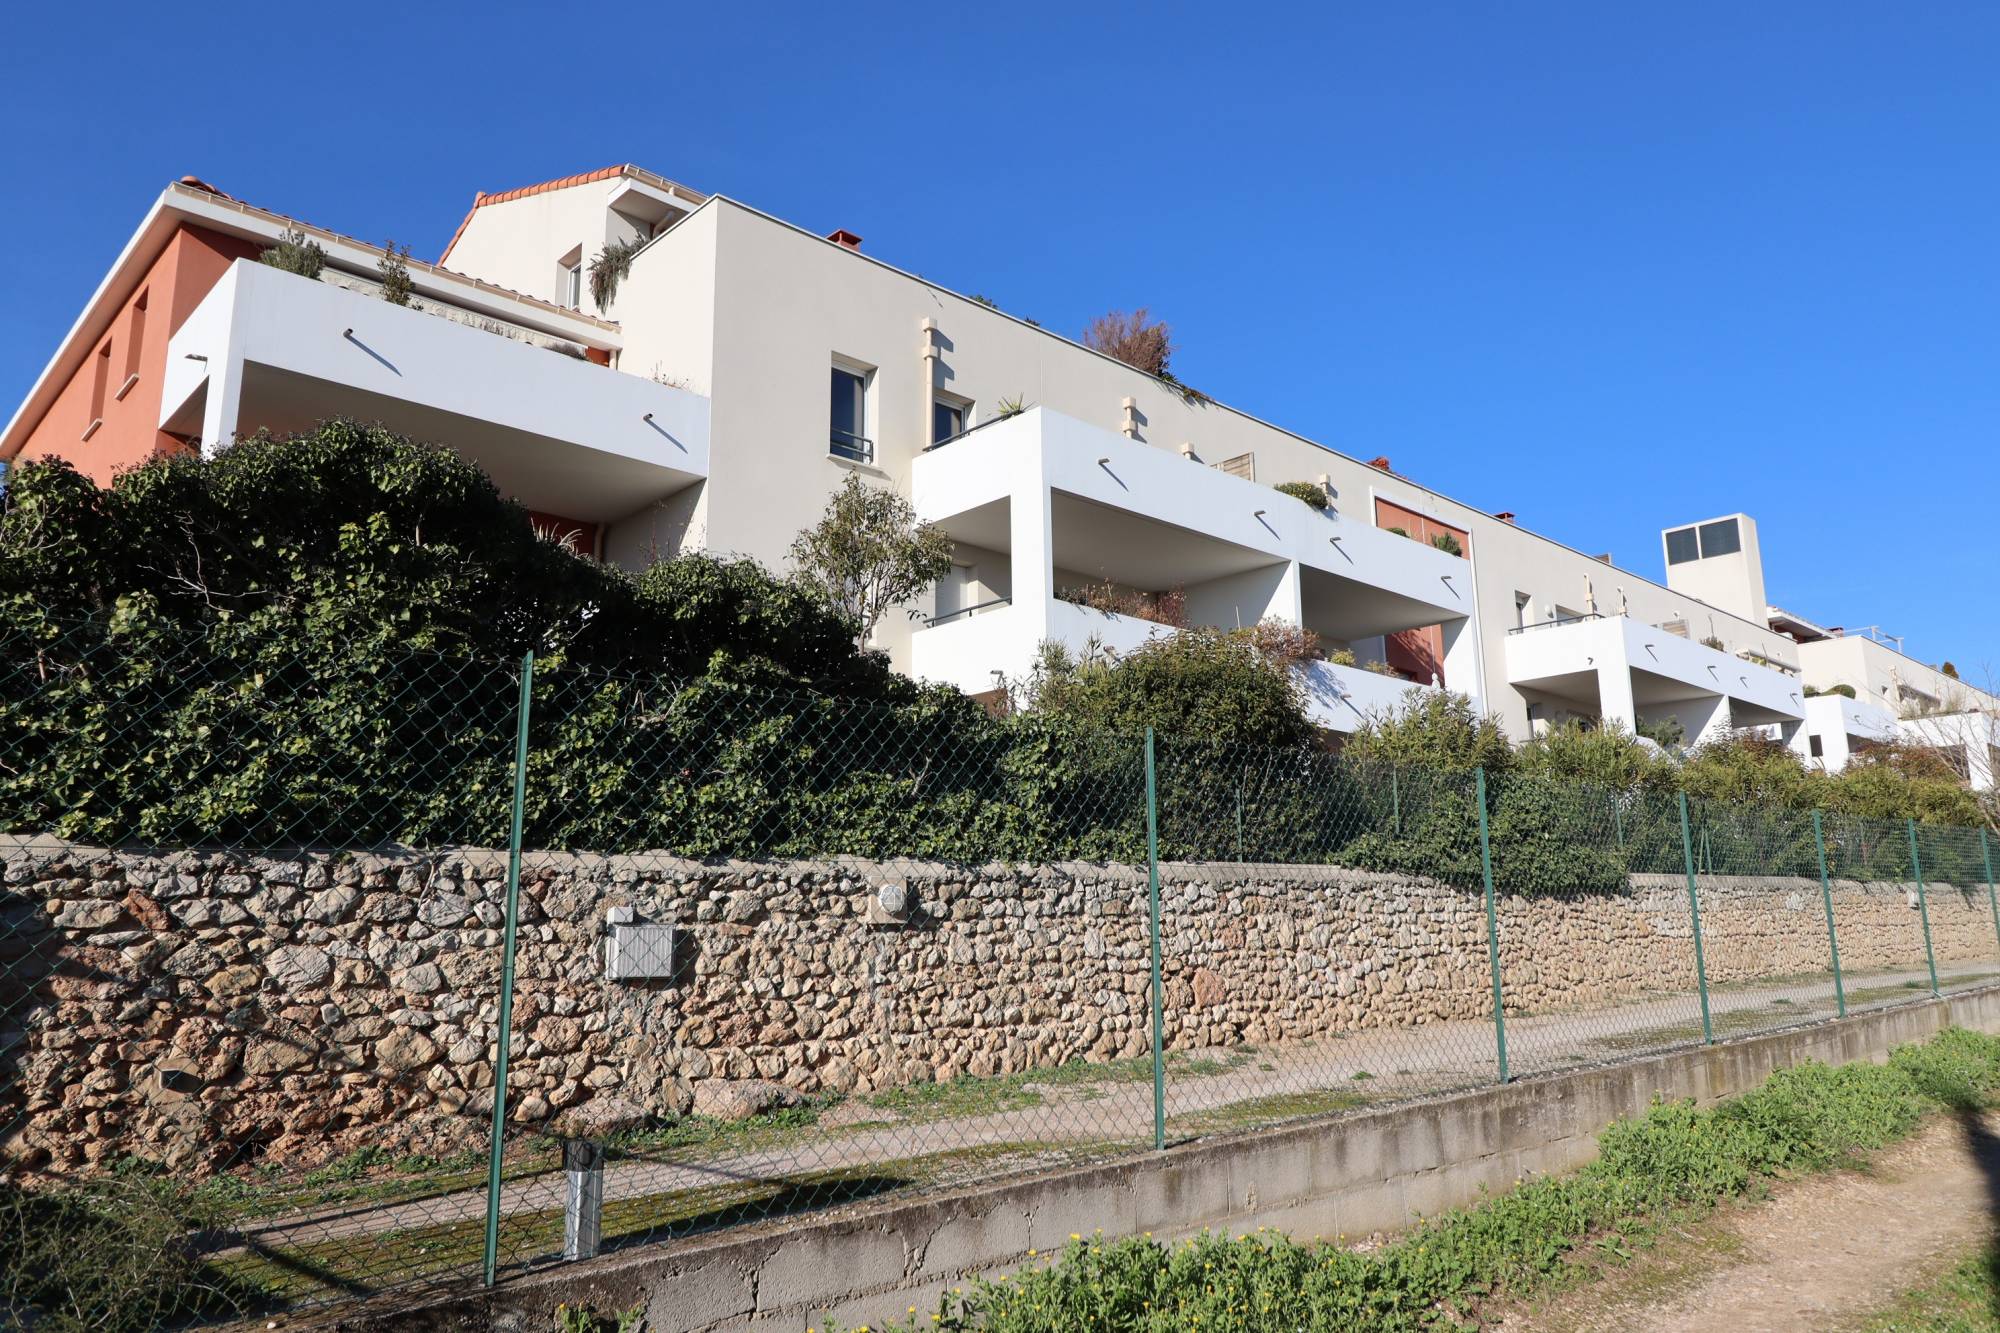 résidence neuve 2015 A louer appartement 3 pièces 57 m² avec terrasse, place de parking privative et garage La Batarelle 13013 Marseille 